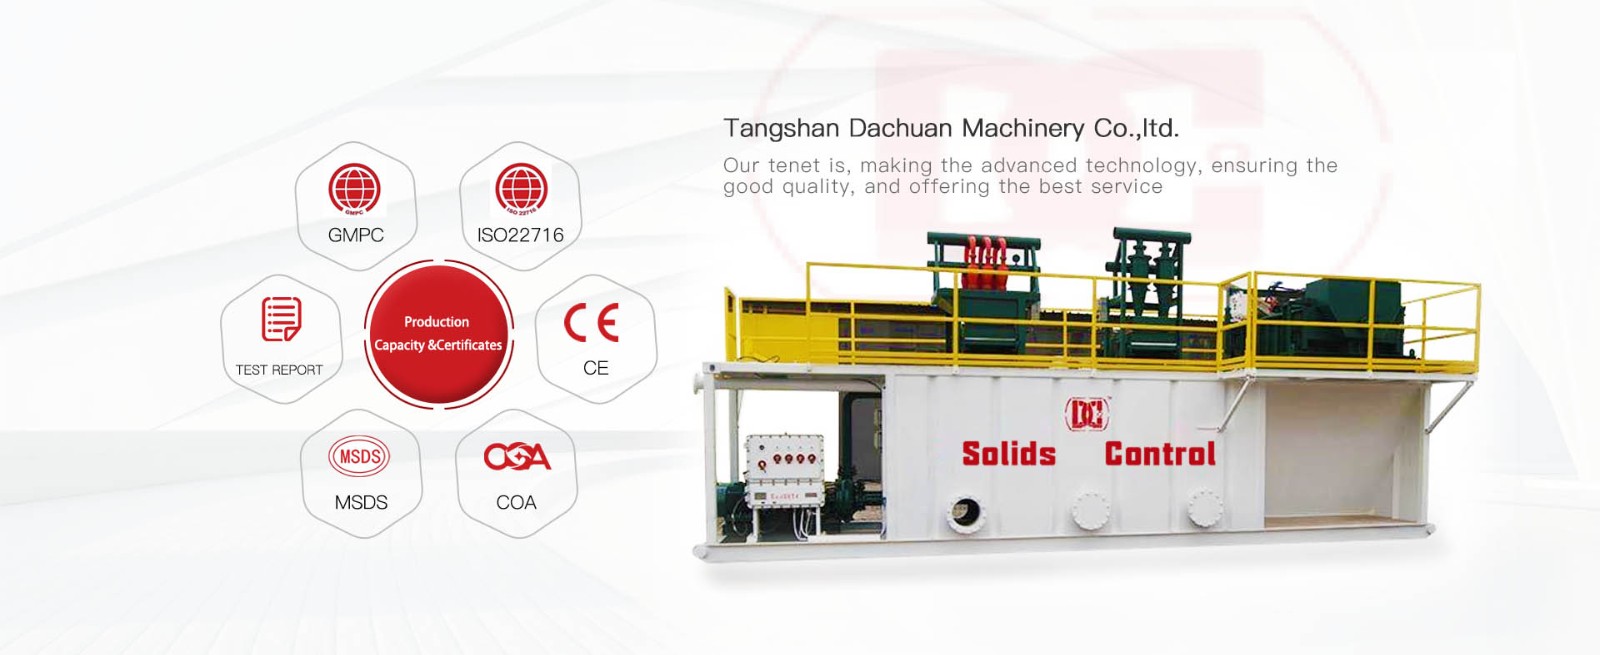 Tangshan Dachuan Machinery Company